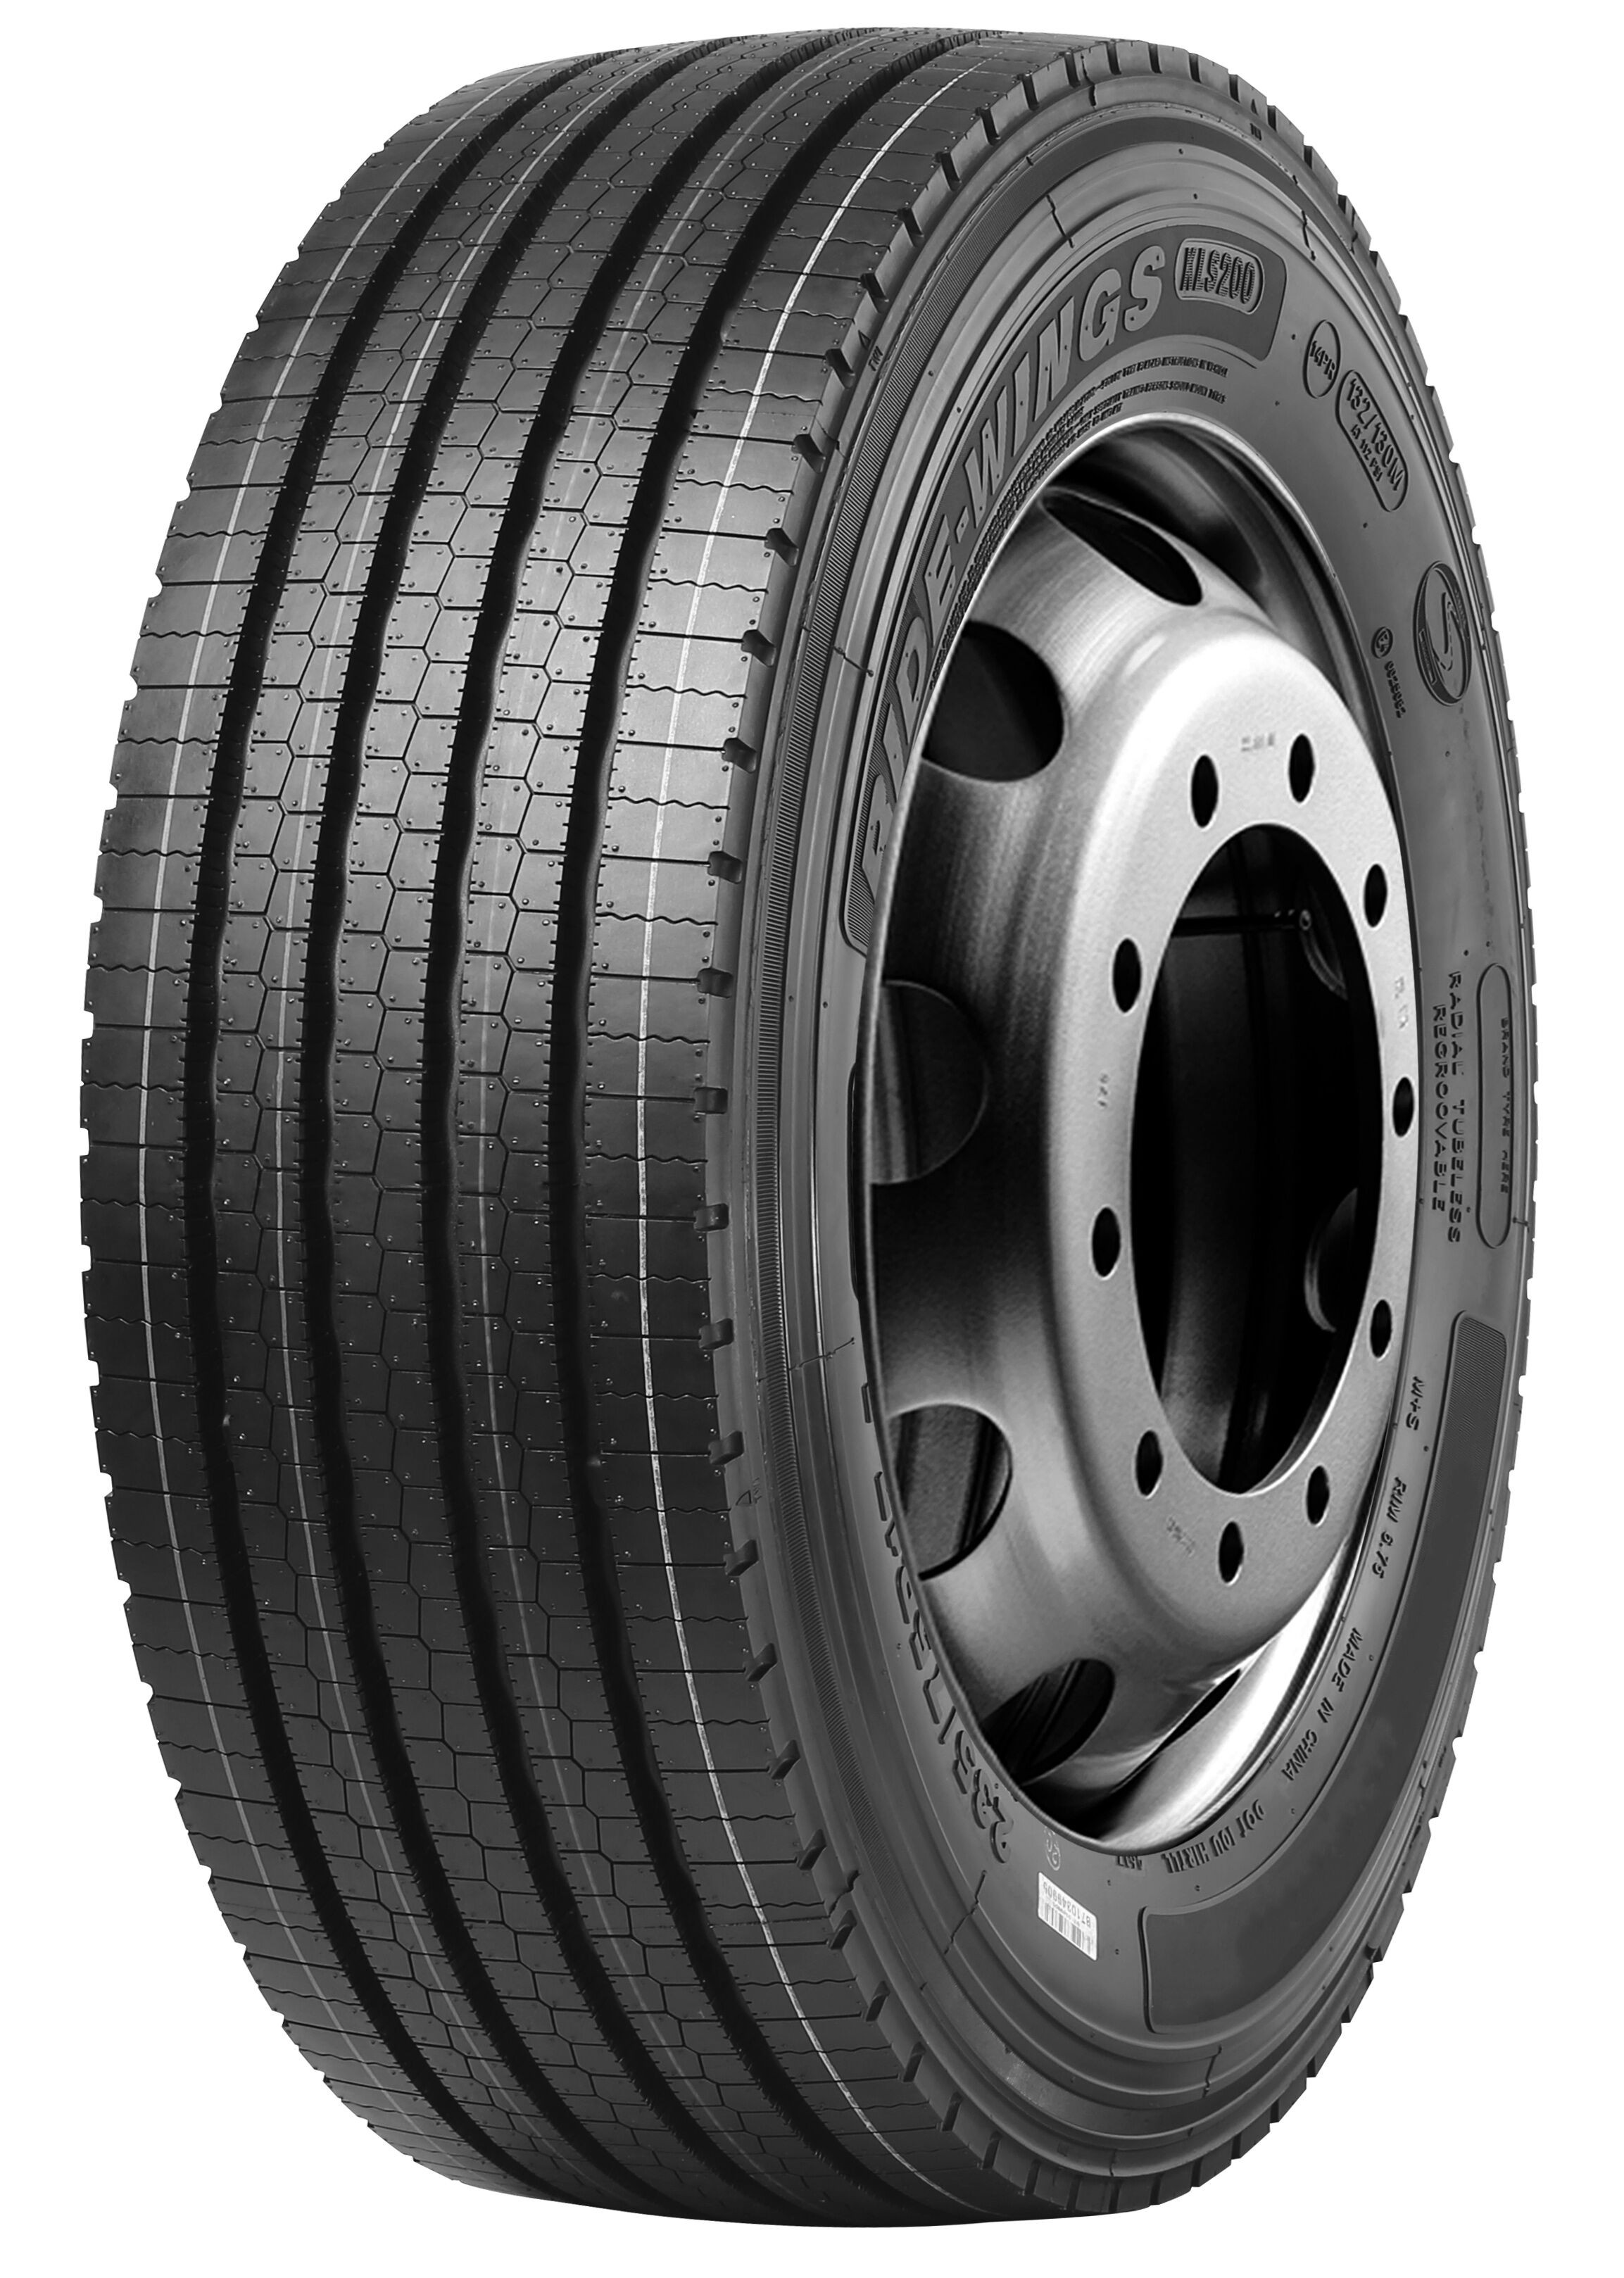 Gomme Nuove Benchmark 235/75 R17.5 132/130M KLS200 M+S (8.00mm) pneumatici nuovi Estivo